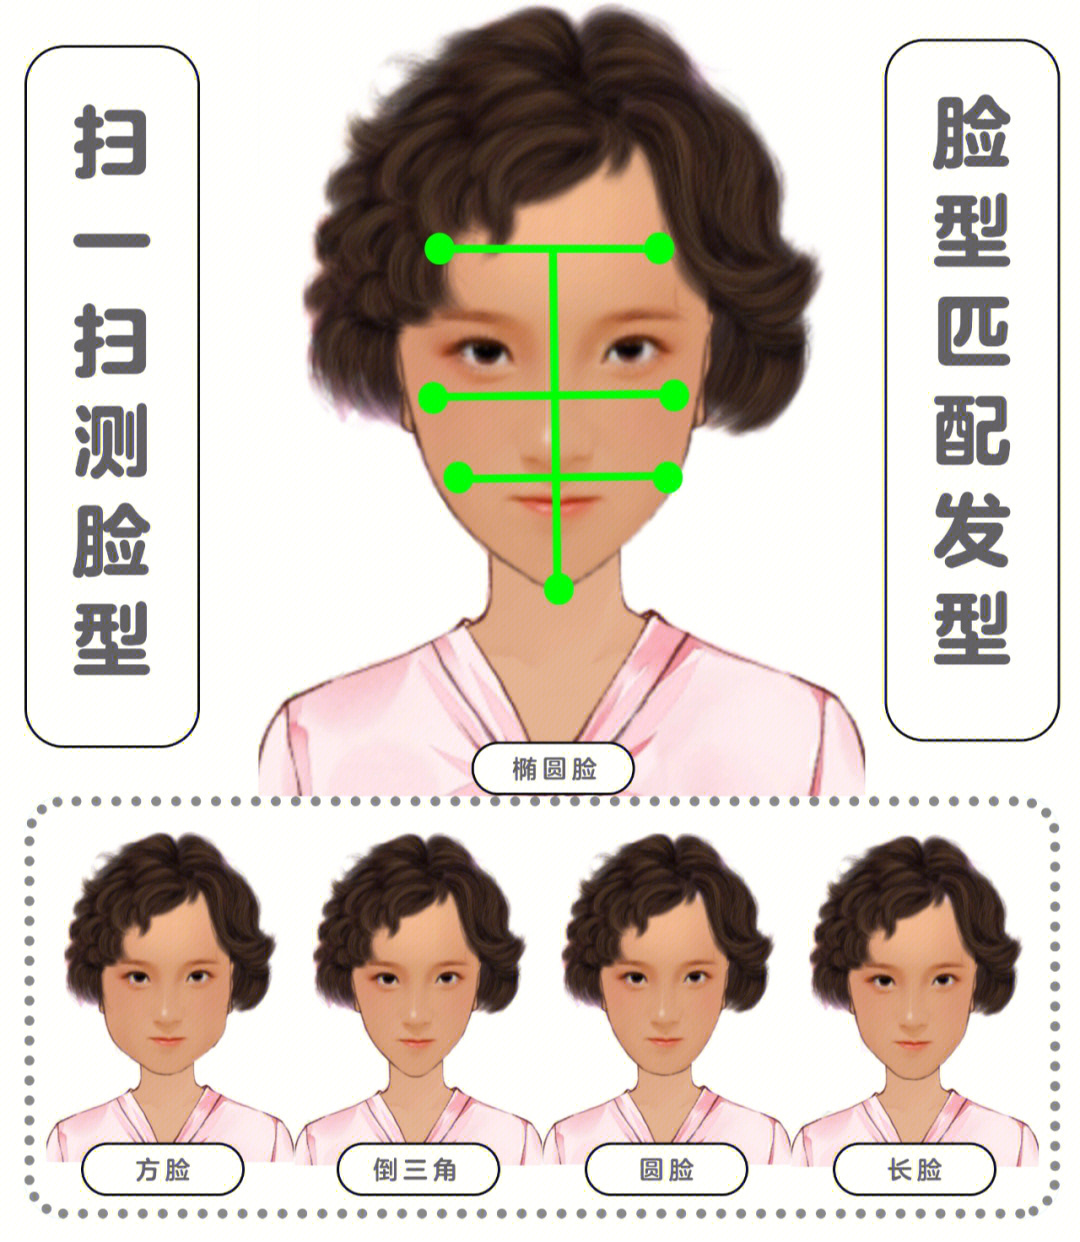 扫一扫测脸型79根据脸型匹配发型